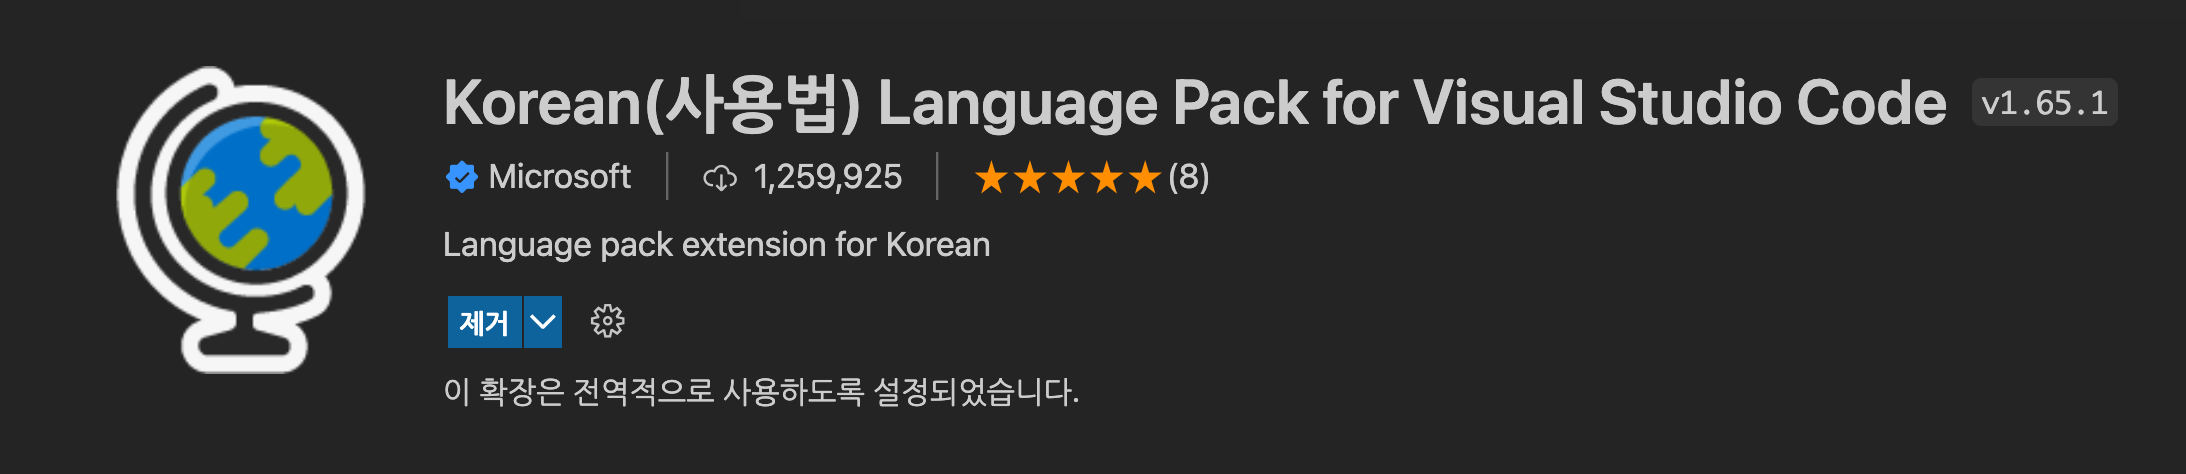 Korean_Language_Pack